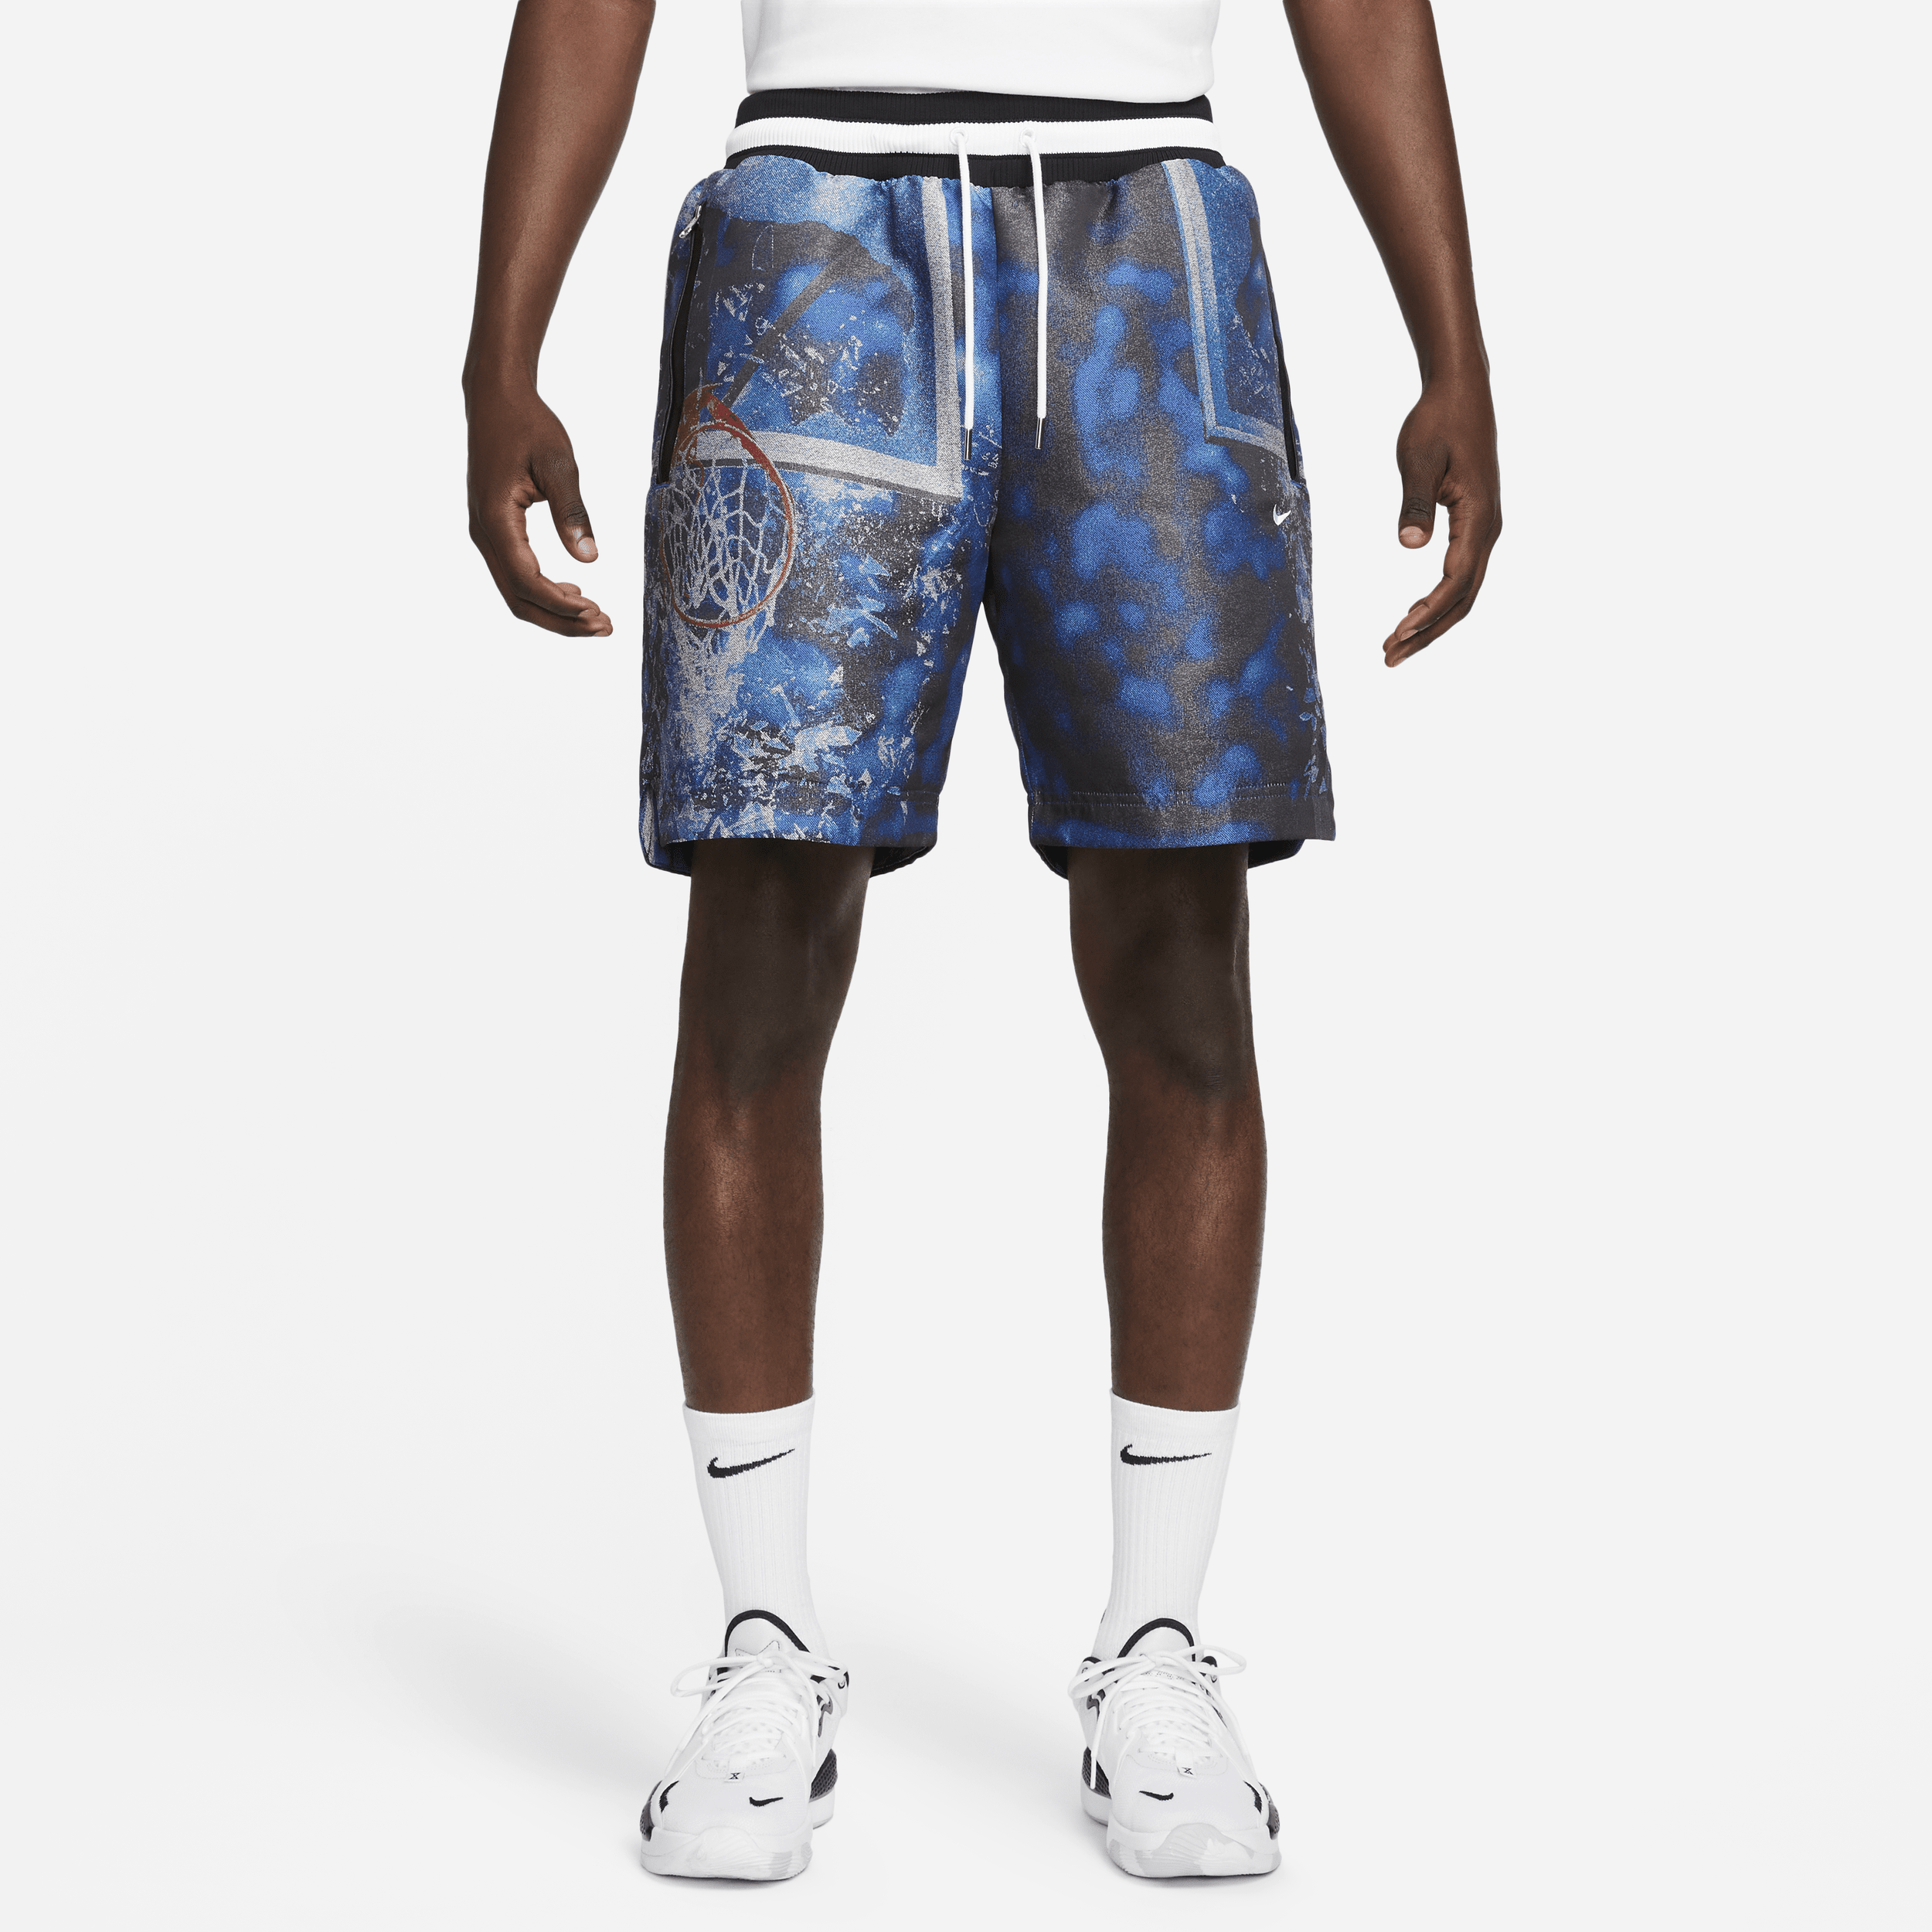 Nike DNA basketbalshorts voor heren (21 cm) - Blauw